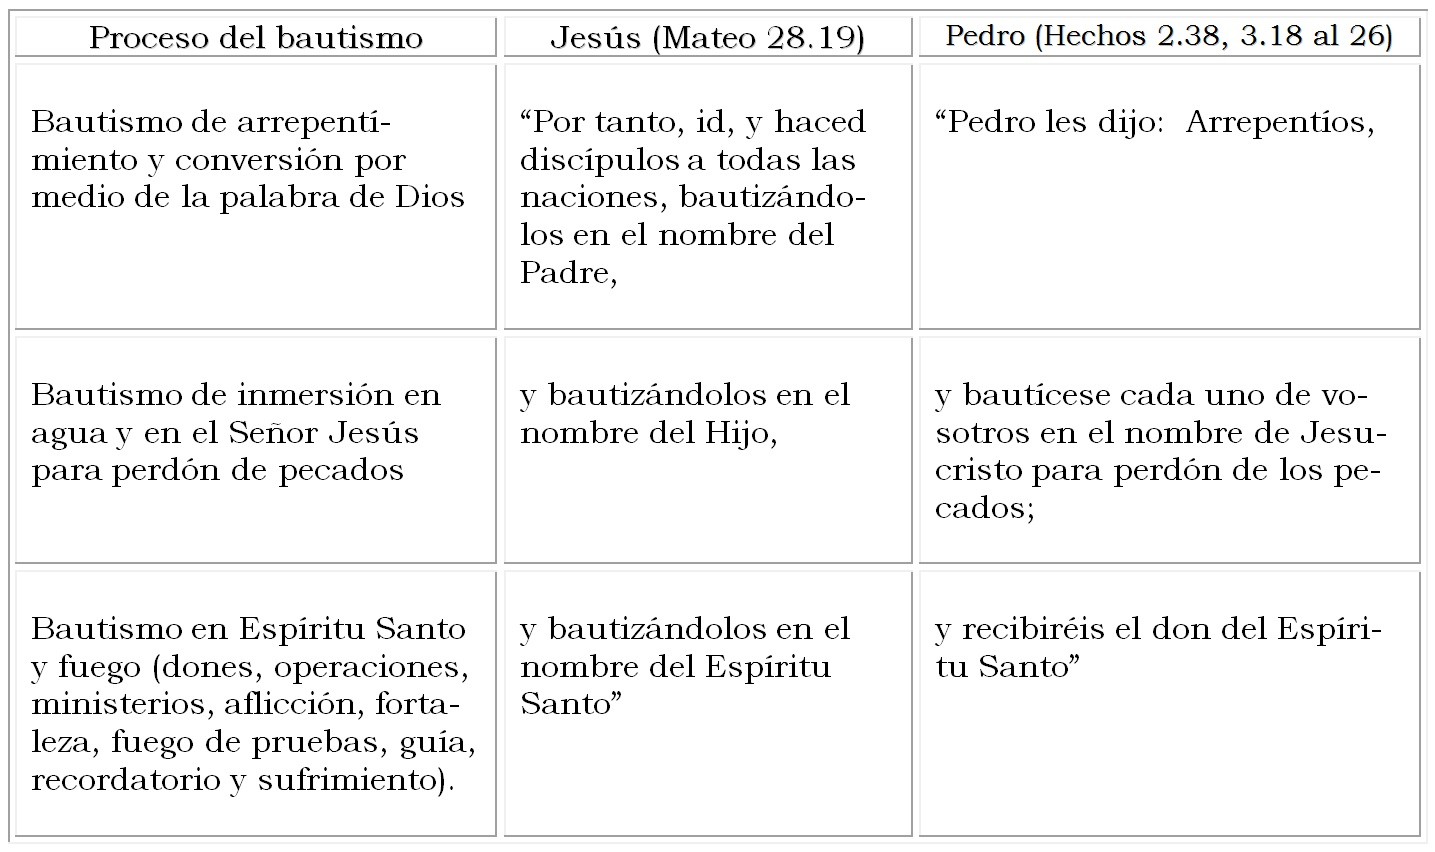 Comparación del proceso del bautismo visto por Jesús y Pedro.